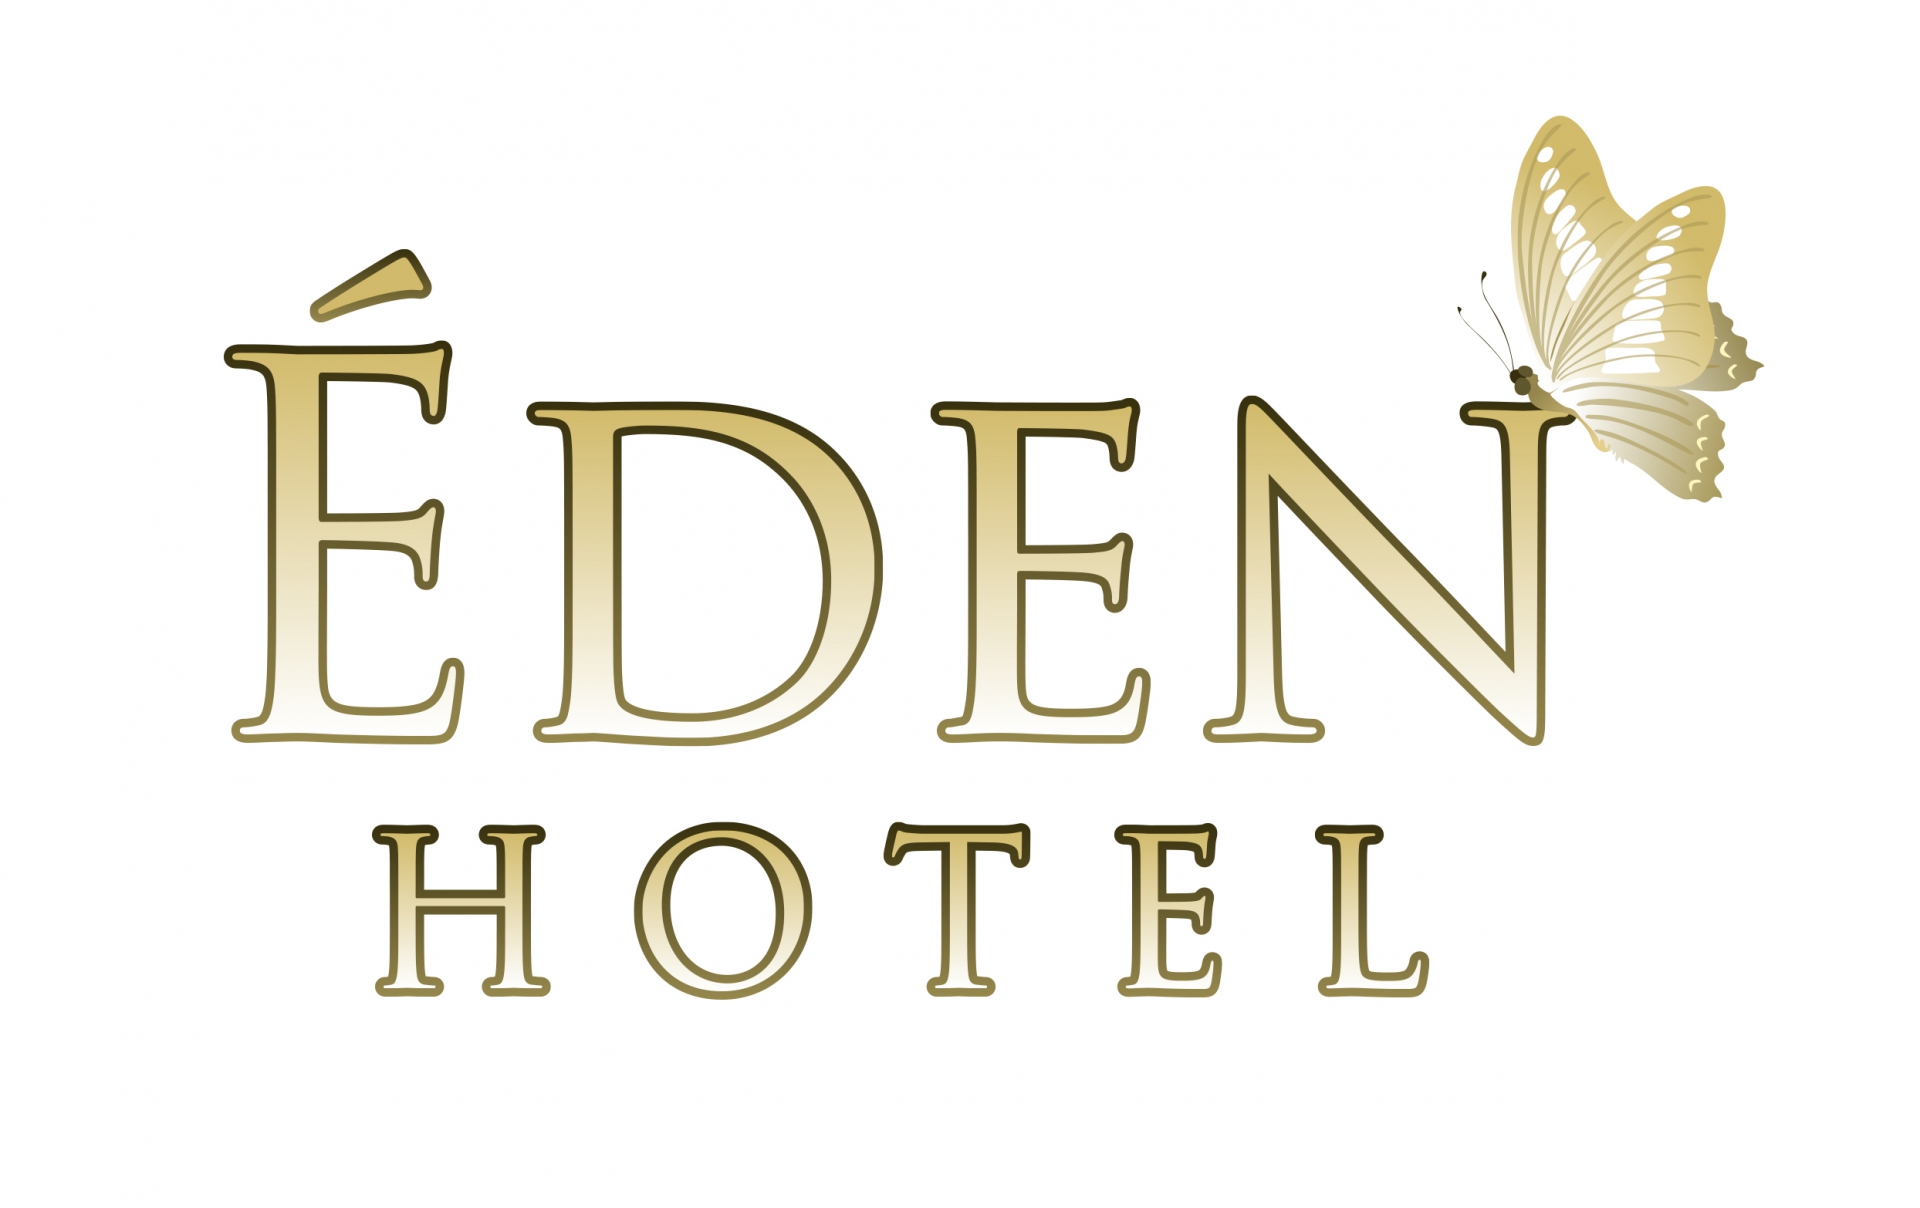 Indul Berkivel az Éden Hotel